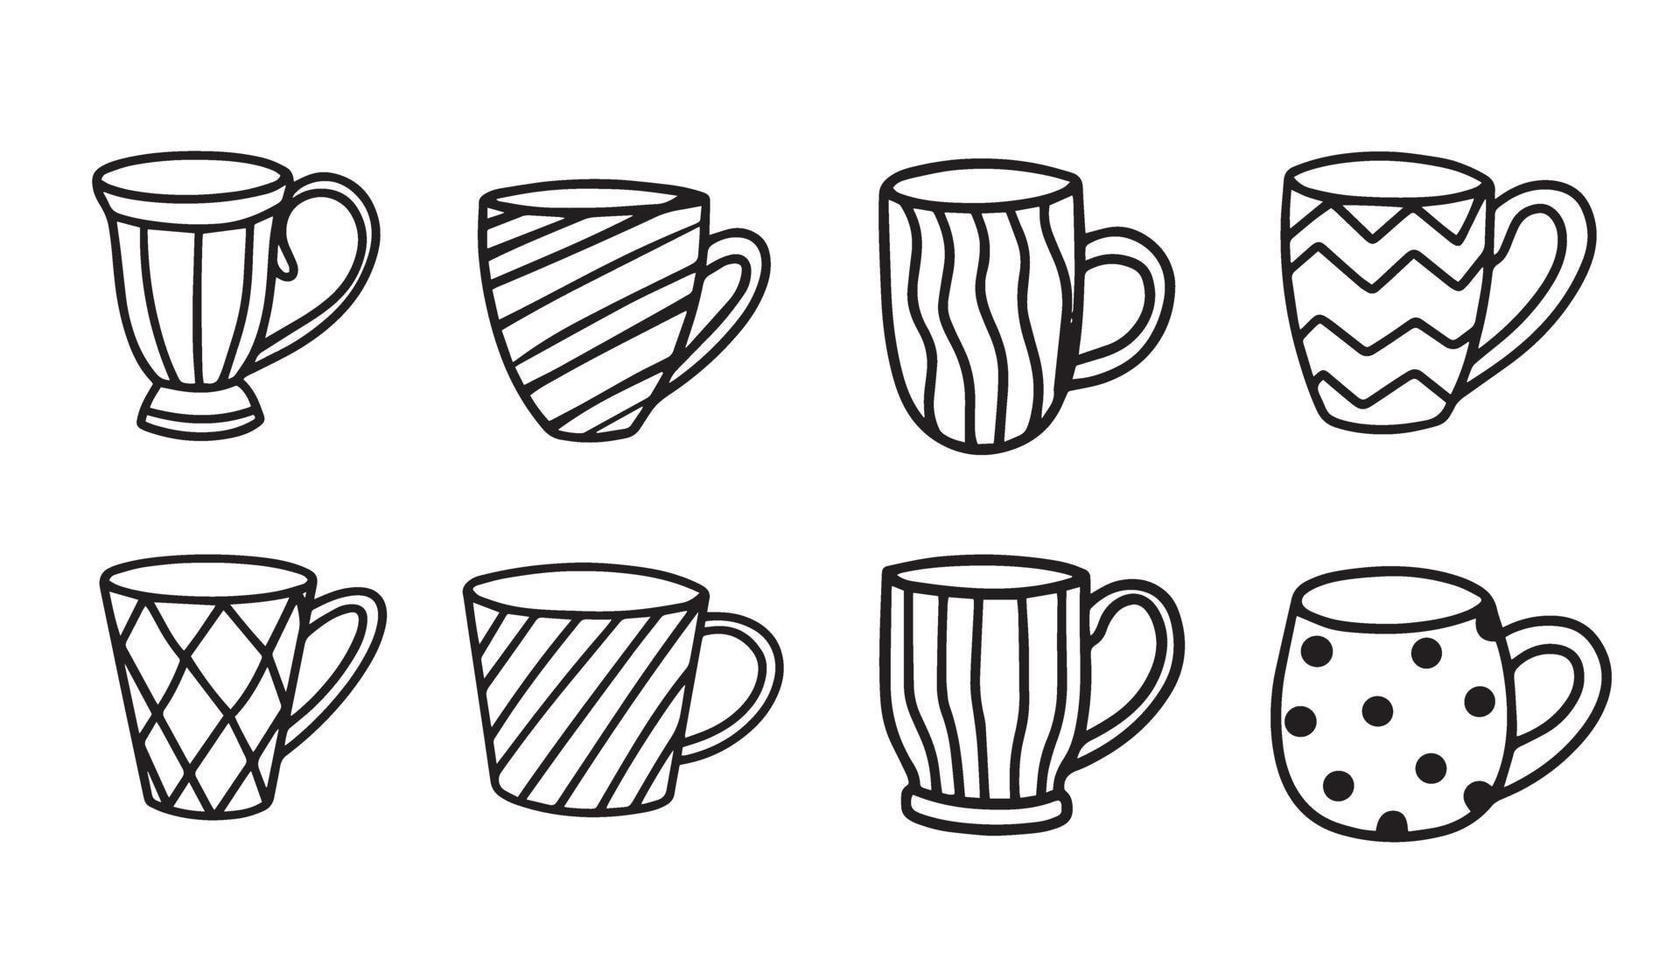 raccolta di tazze isolato su uno sfondo bianco. illustrazione vettoriale in stile doodle.